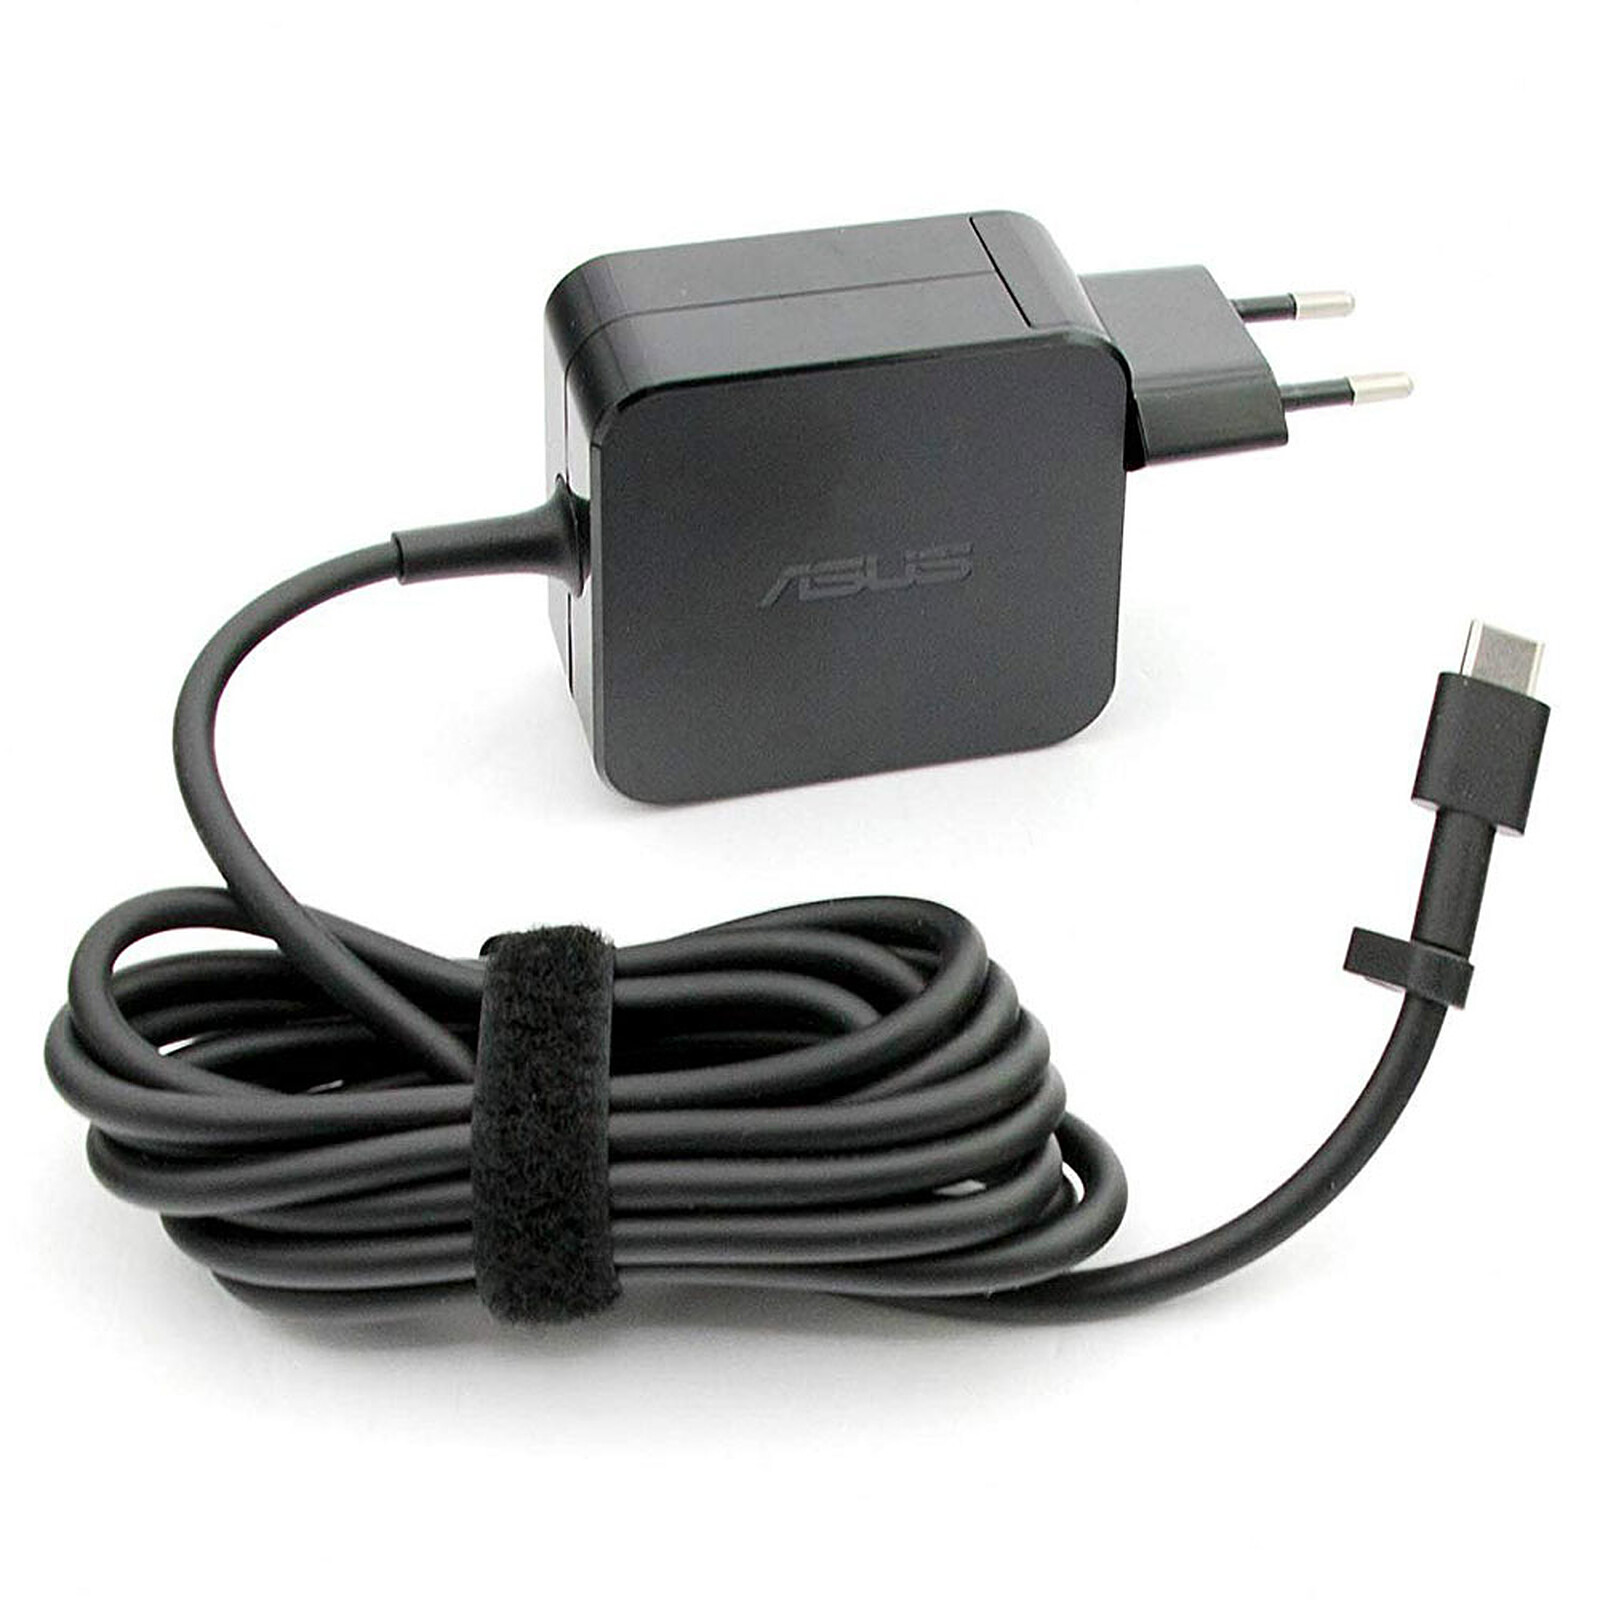 Apple Adaptateur secteur USB-C 140W Blanc - Accessoires Apple - Garantie 3  ans LDLC